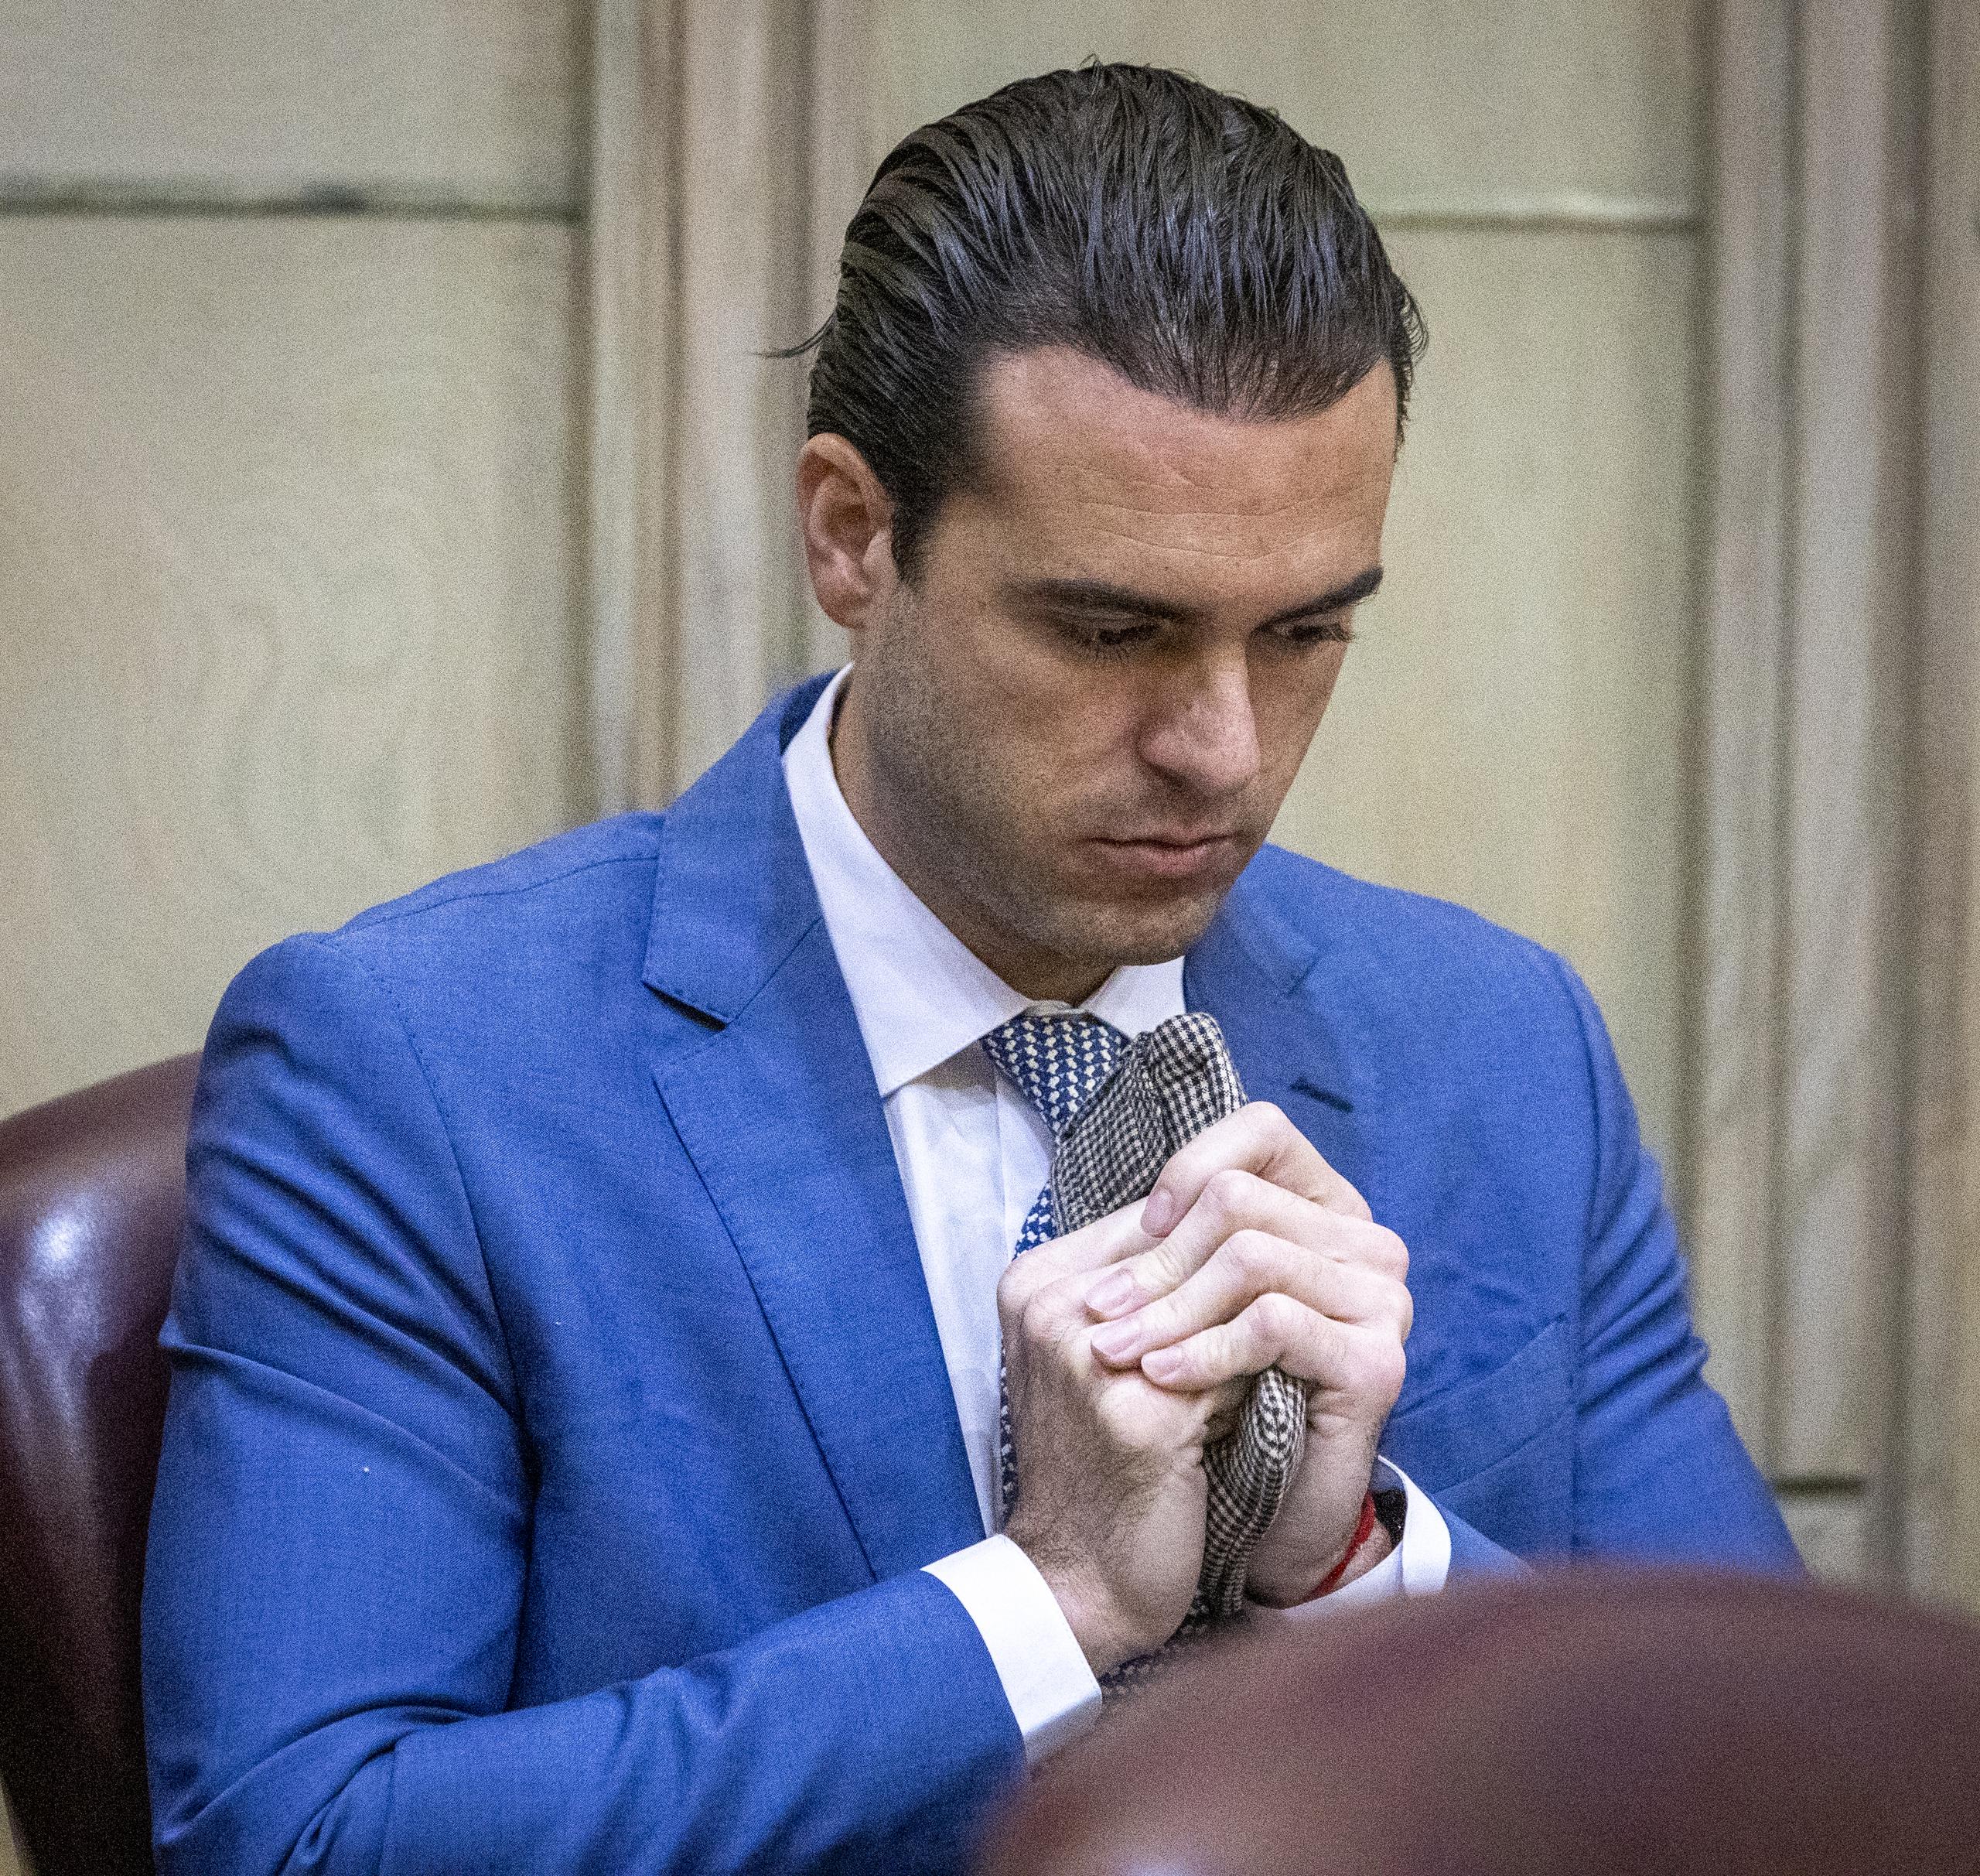 El actor mexicano Pablo Lyle espera la sentencia durante su juicio en una corte de Miami, Florida. EFE/José A. Iglesias/Pool